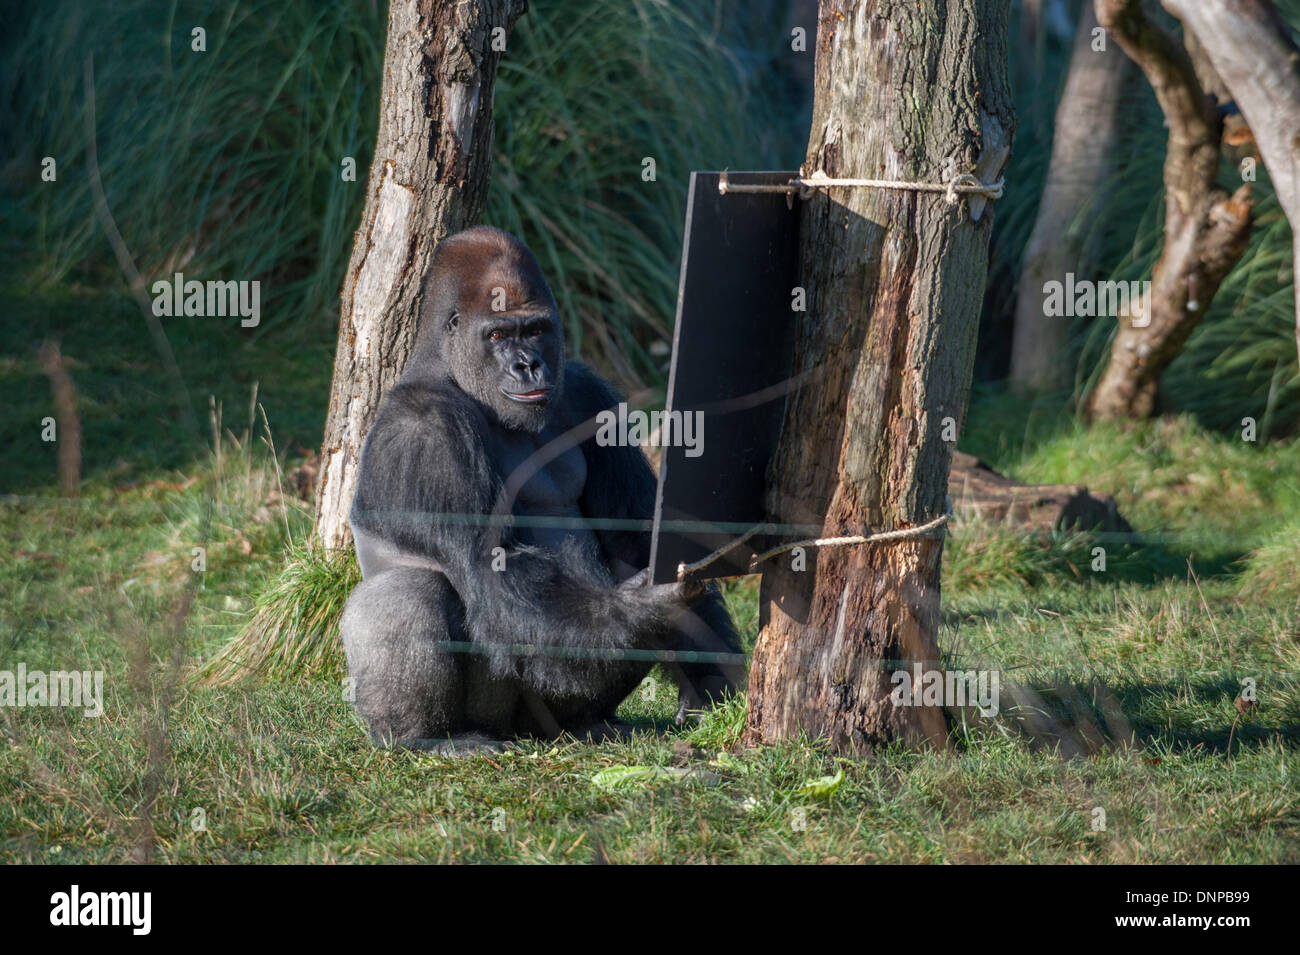 Lo Zoo di Londra, il Regents Park, Regno Unito. Il 2 gennaio, 2013. La ISS annuale constatazione prende il via con un conteggio dei Gorillas occidentali della pianura. Il maschio silverback orologi fotografi. Credito: Malcolm Park editoriale/Alamy Live News Foto Stock